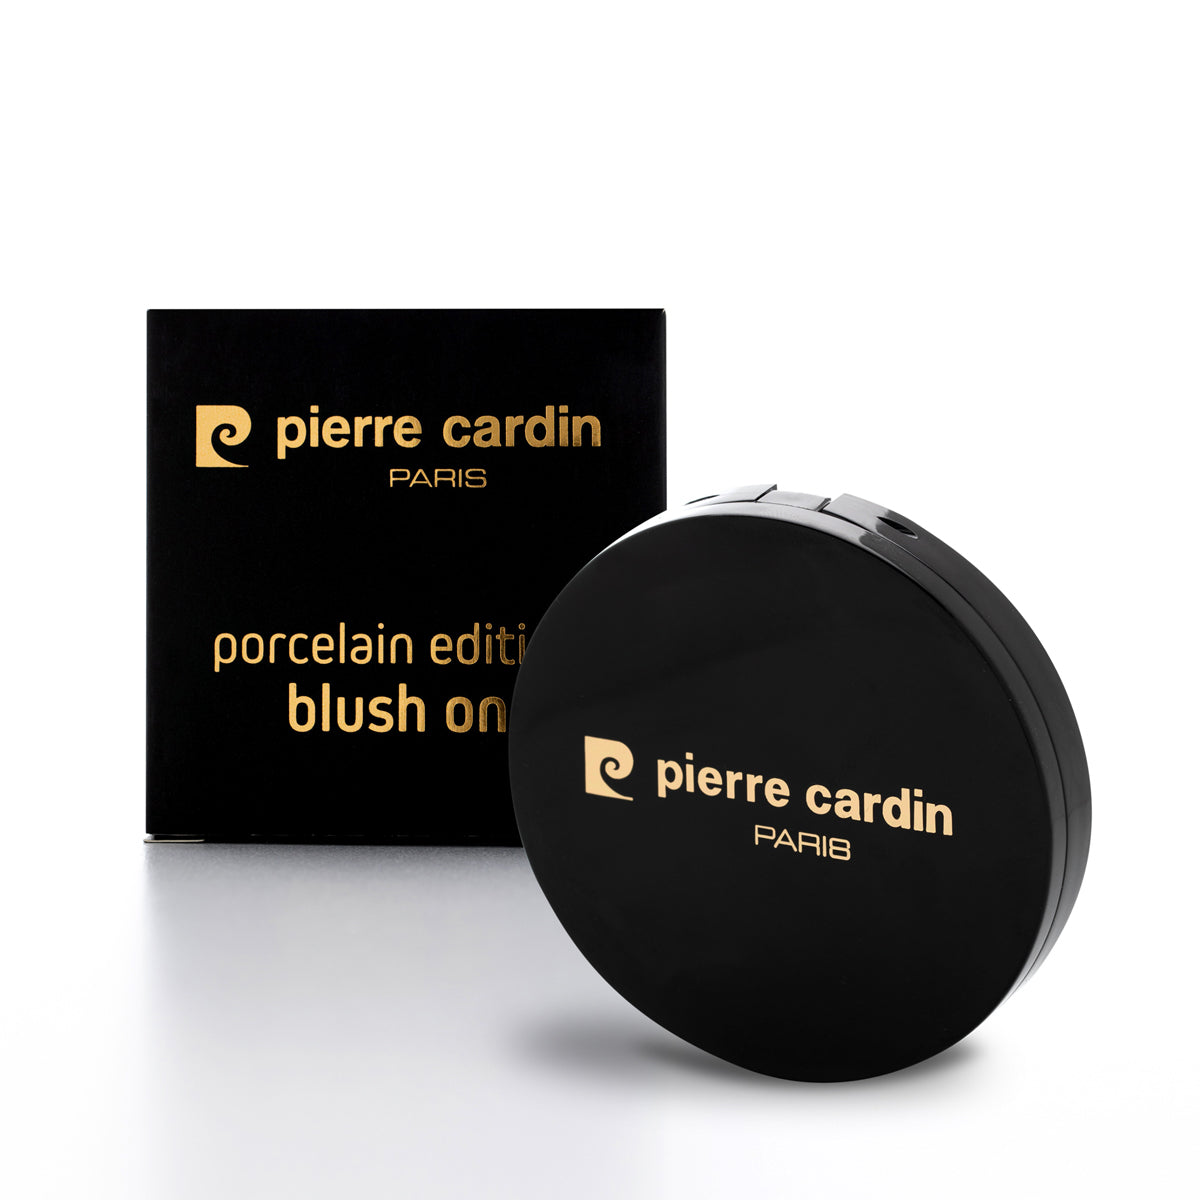 Pierre Cardin Édition Porcelaine Blush Sur Prune Rosée 860 - 13 g